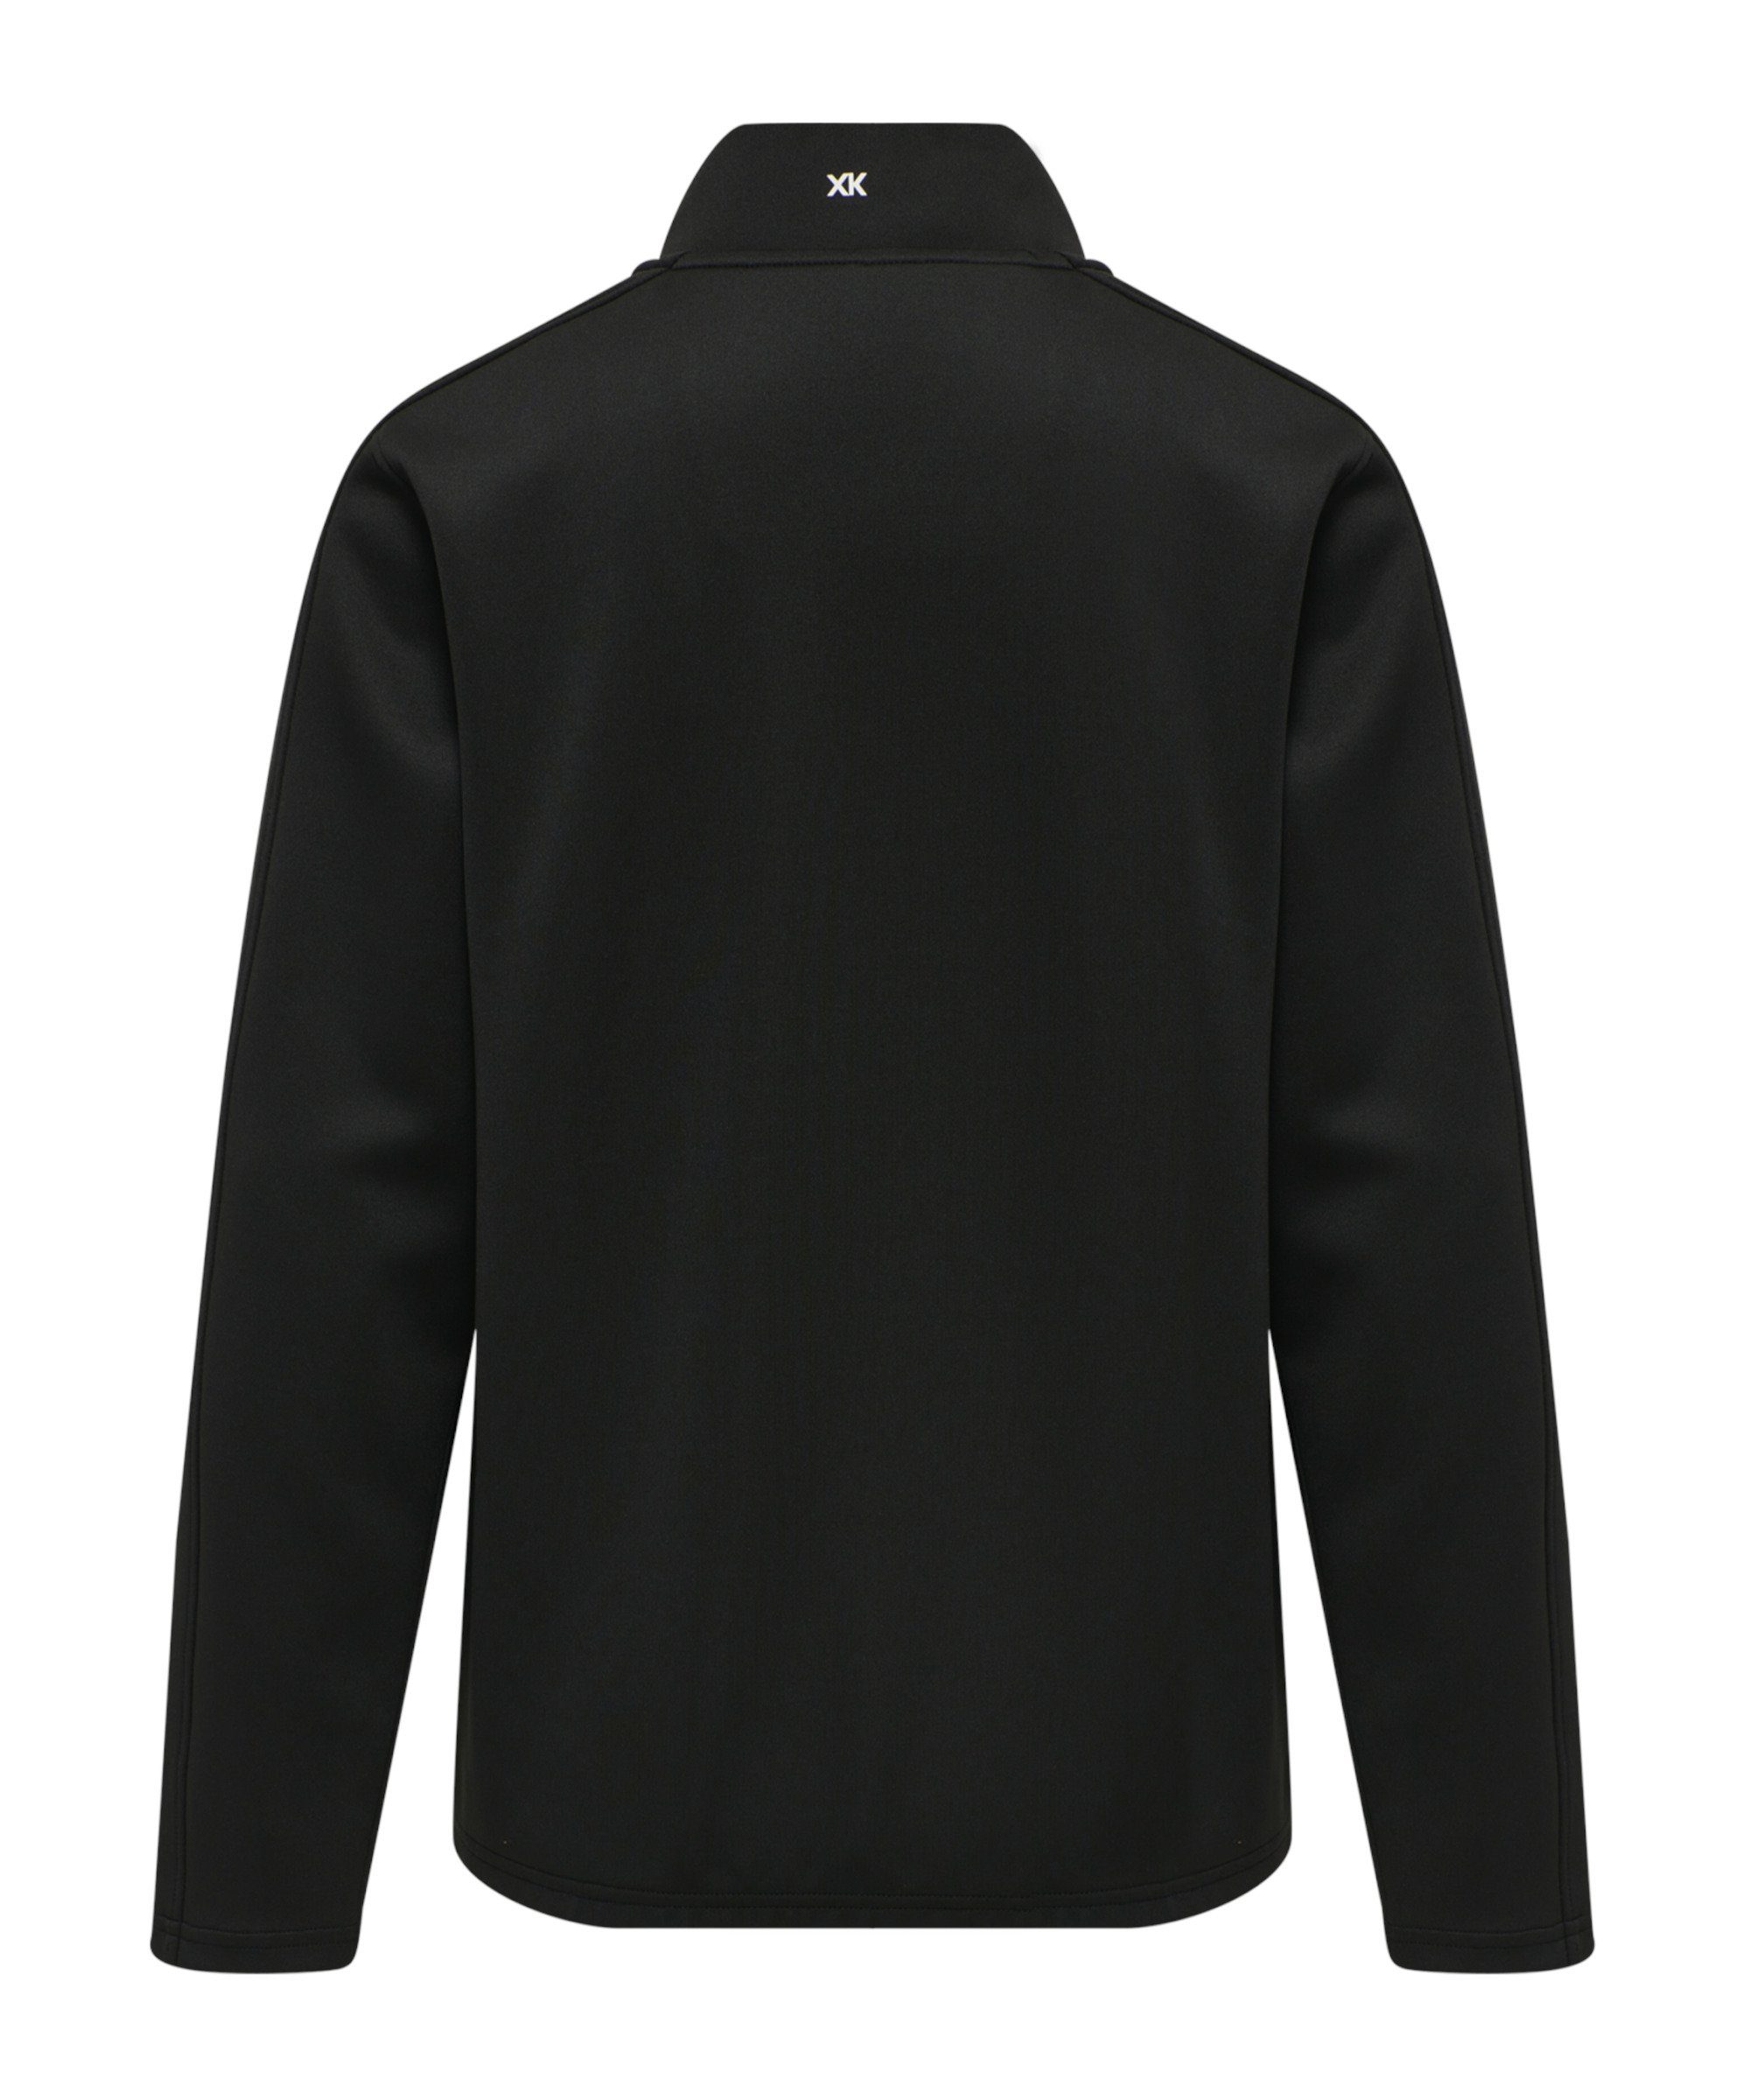 Damen hmlCORE hummel HalfZip XK Sweatshirt schwarz Sweater